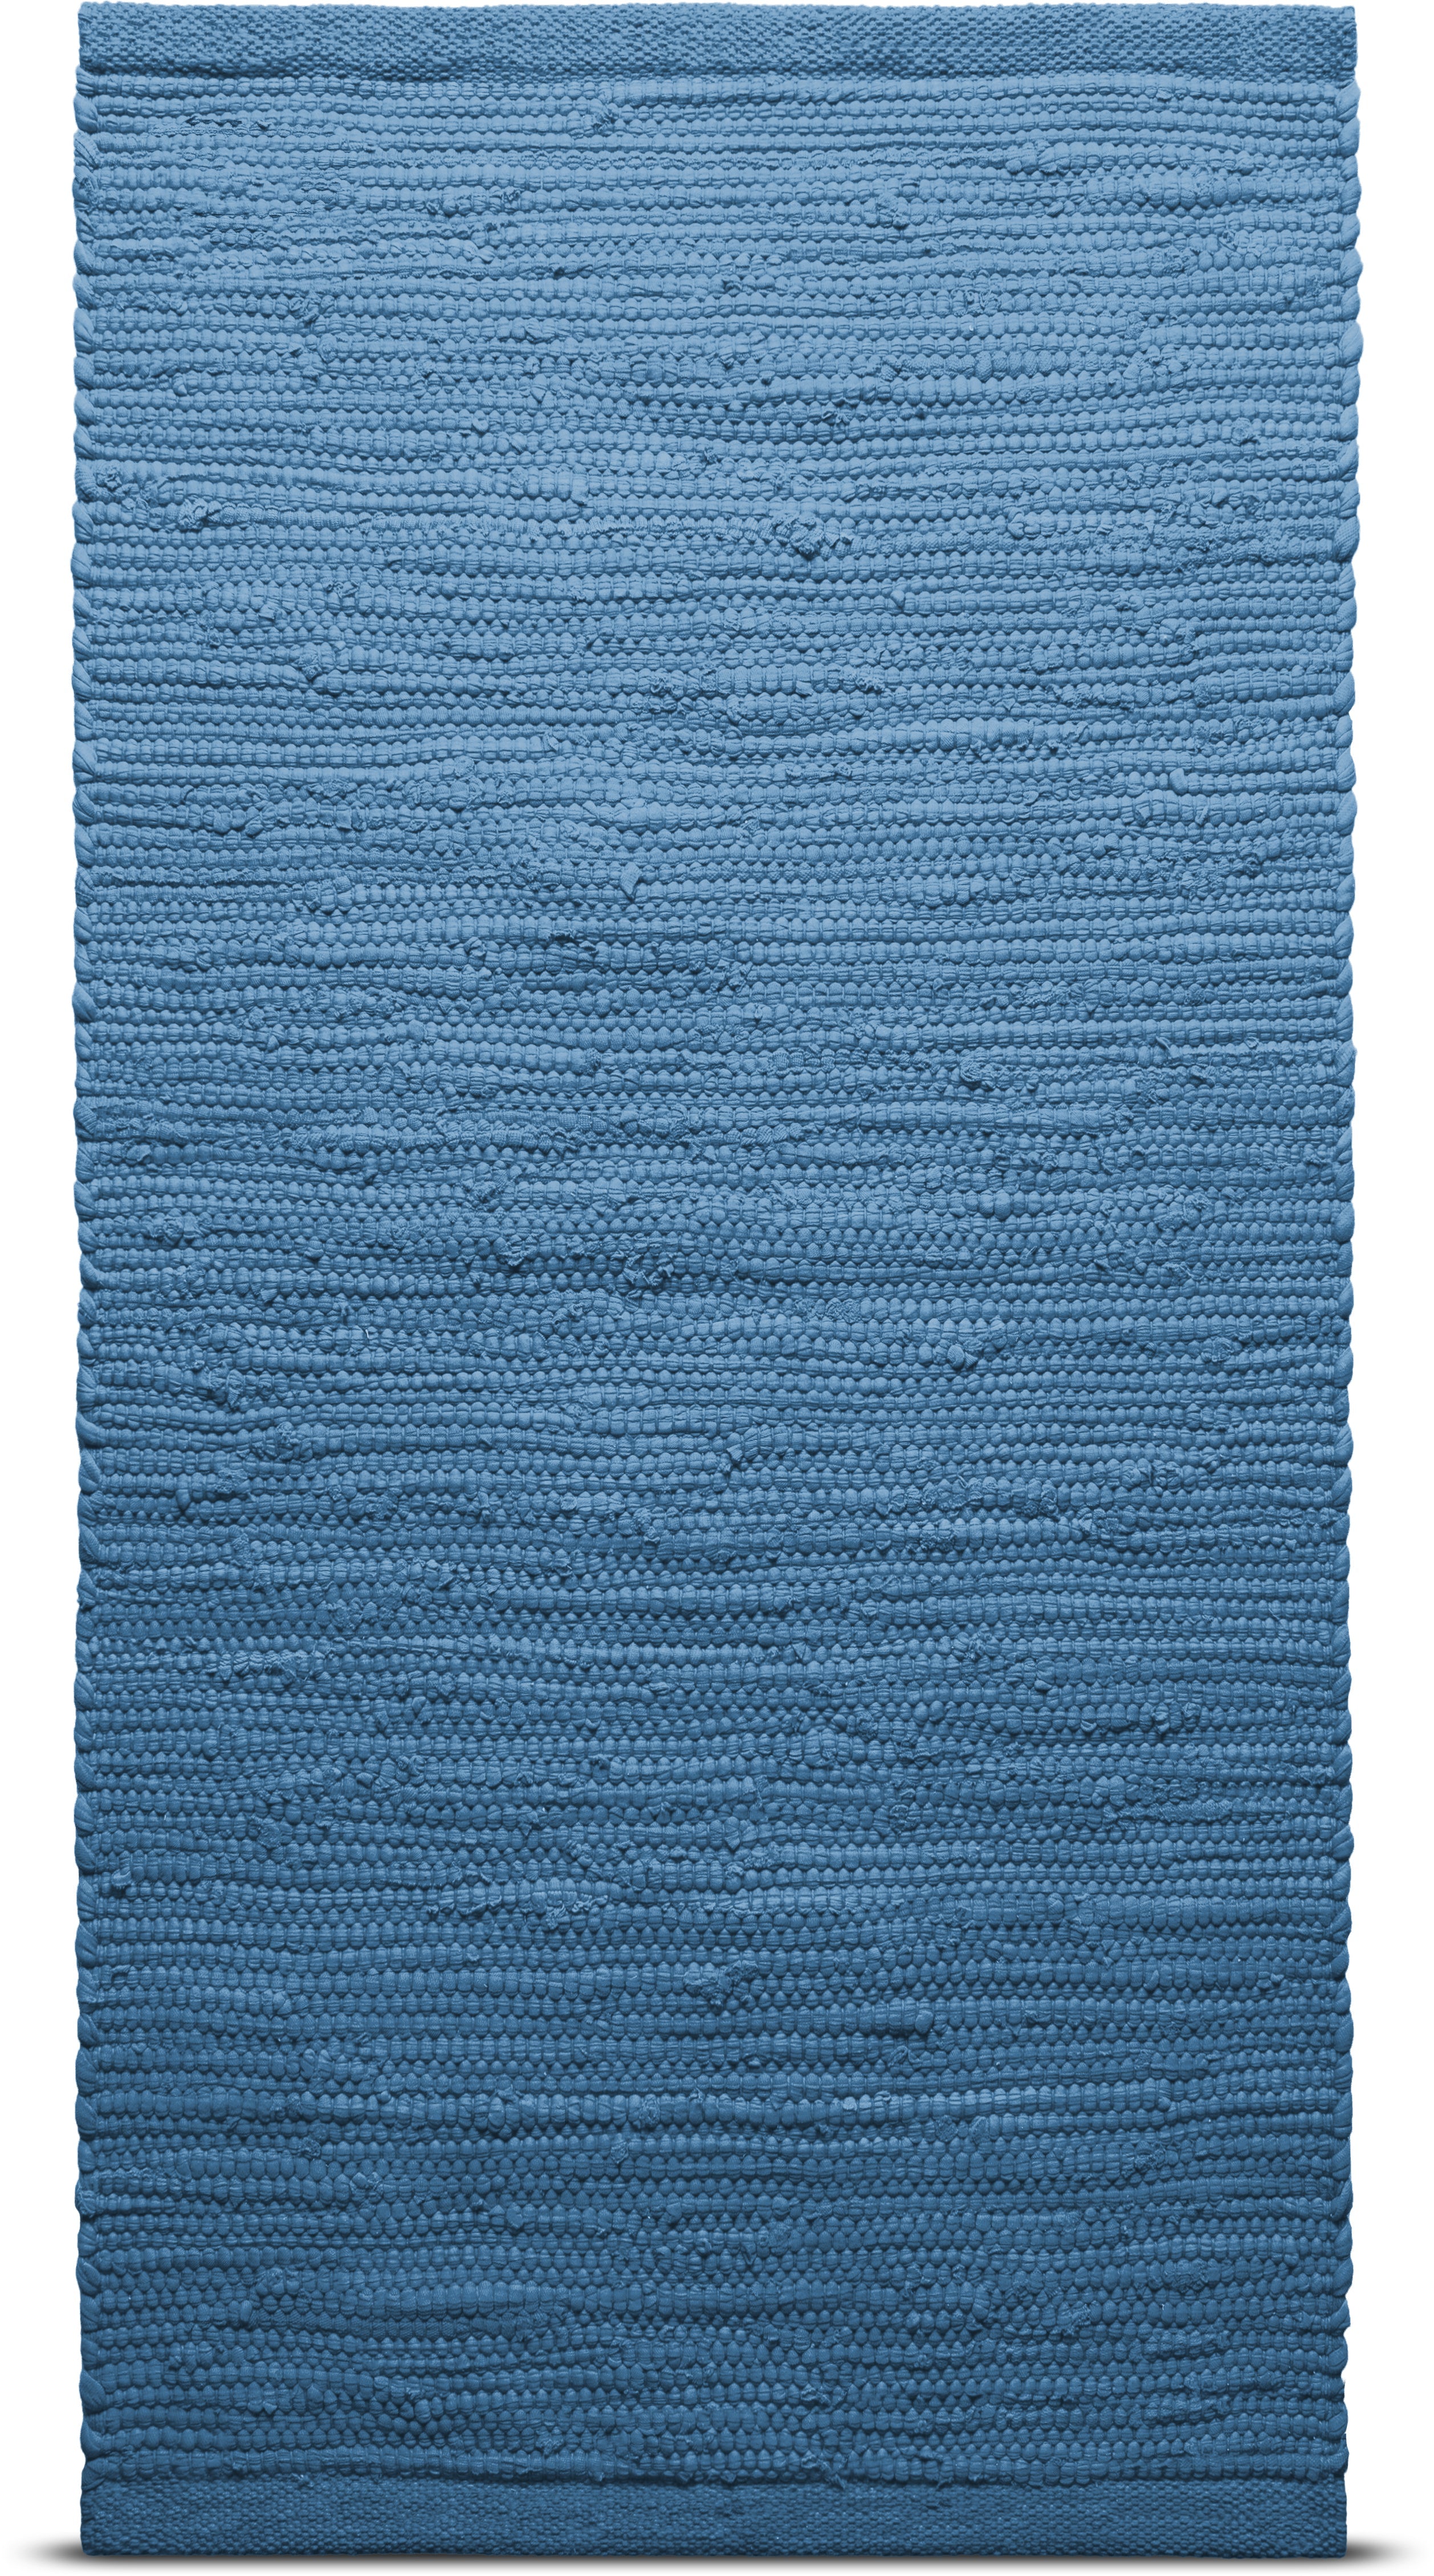 Tappeto in cotone solido 65 x 135 cm, Pacifico